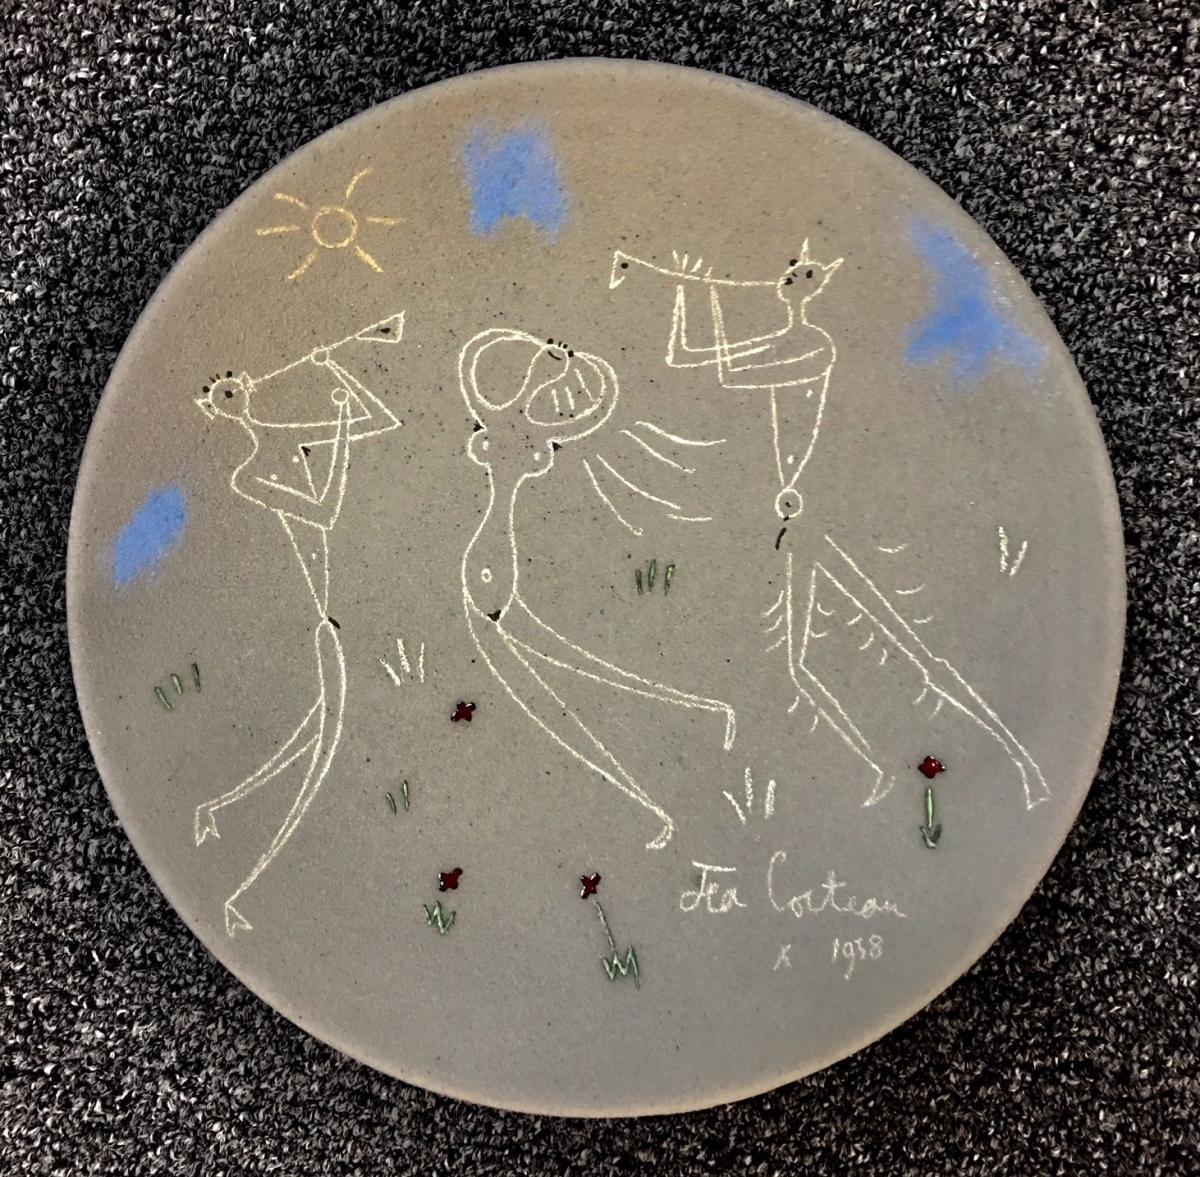 Danseuse et Musiciens, Jean Cocteau Terracotta Pottery Dish, Signed & Dated By Jean Cocteau 1958